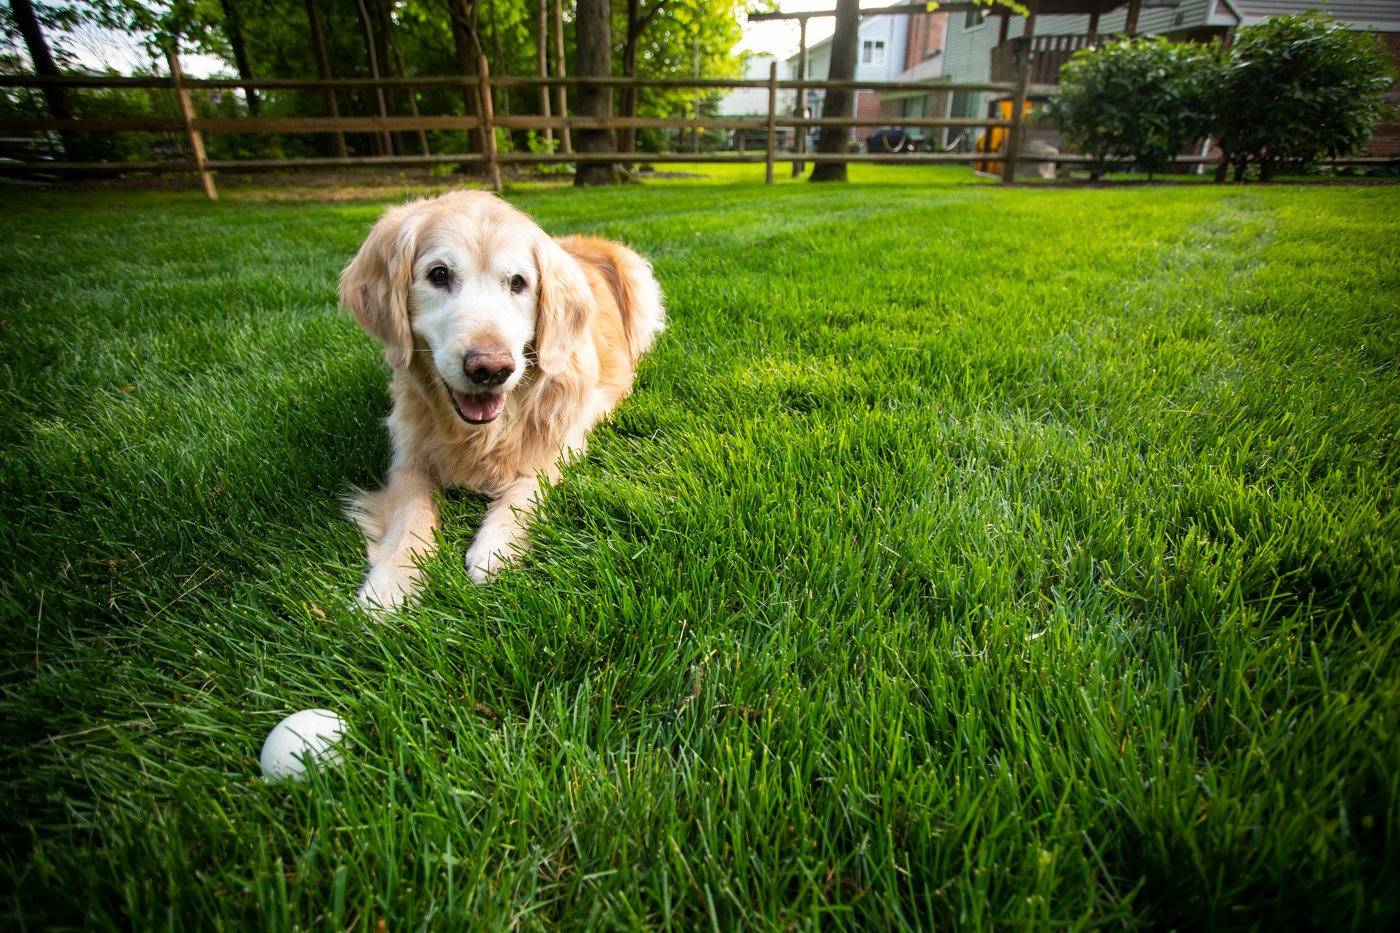 A dog enjoying his healthy green lawn